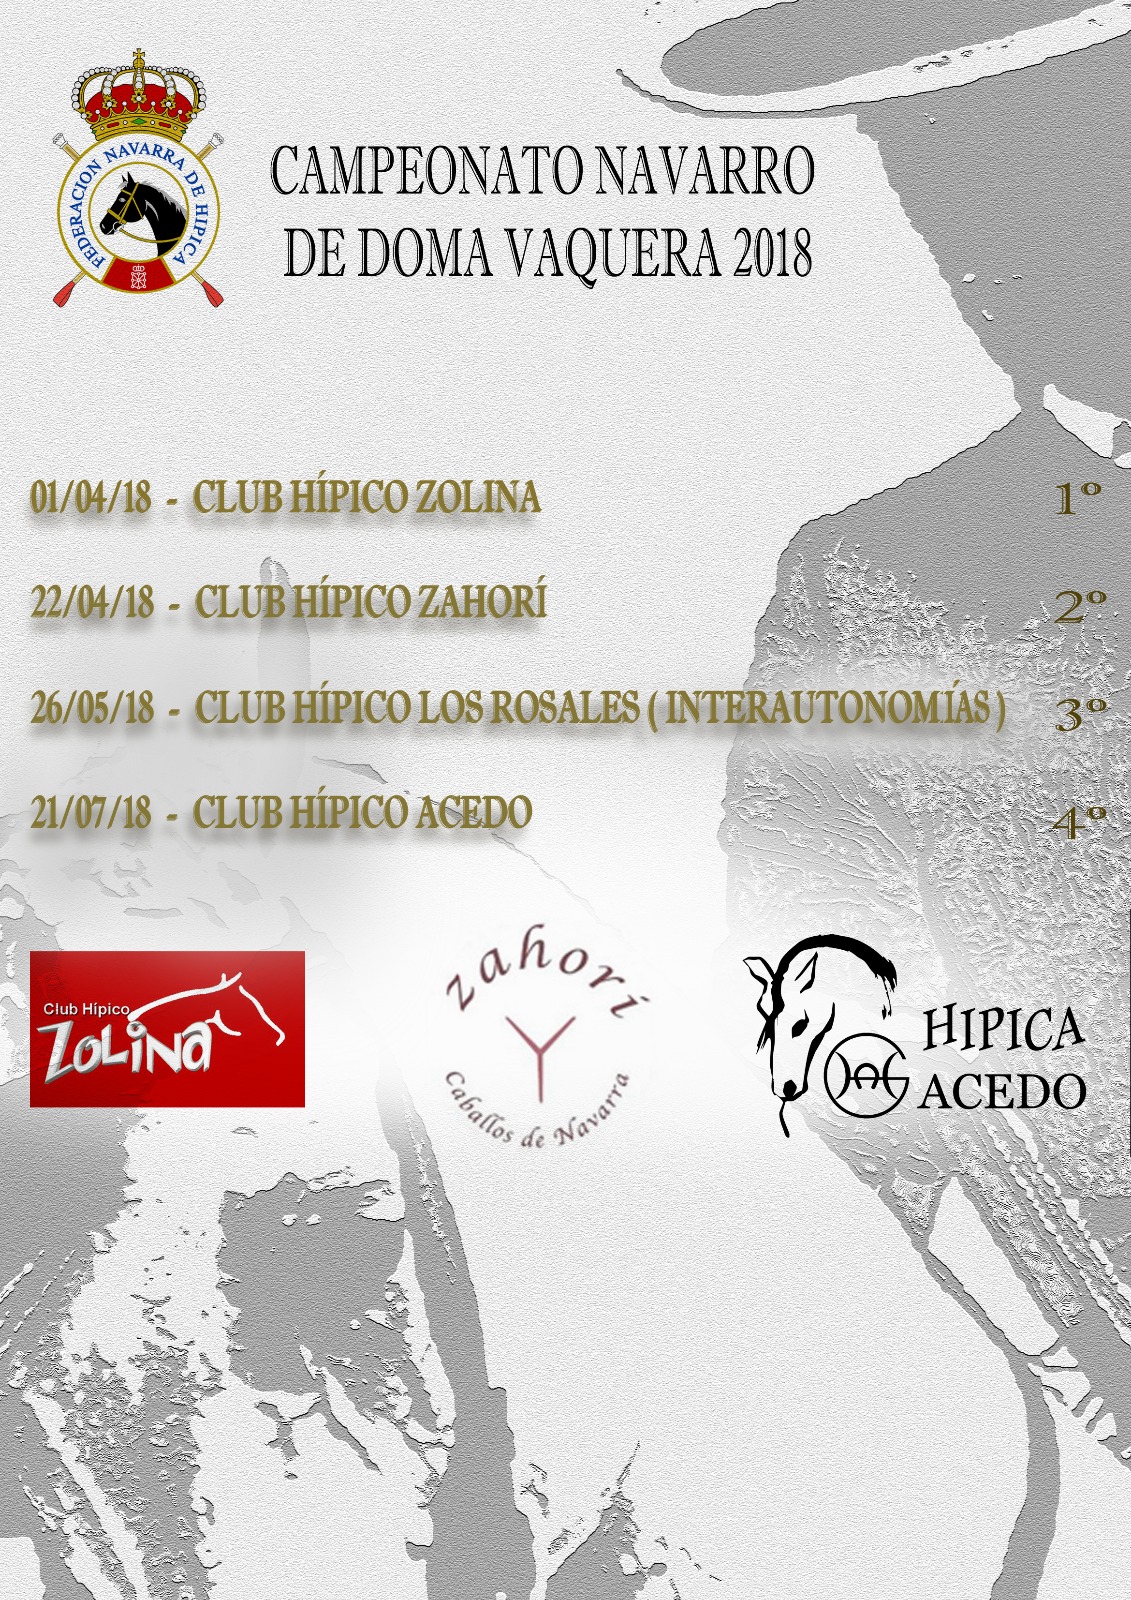 2ª Fase del Campeonato Navarro de Doma Vaquera en el Club Hípico Zahorí el domingo 22 de abril en jornada de tarde